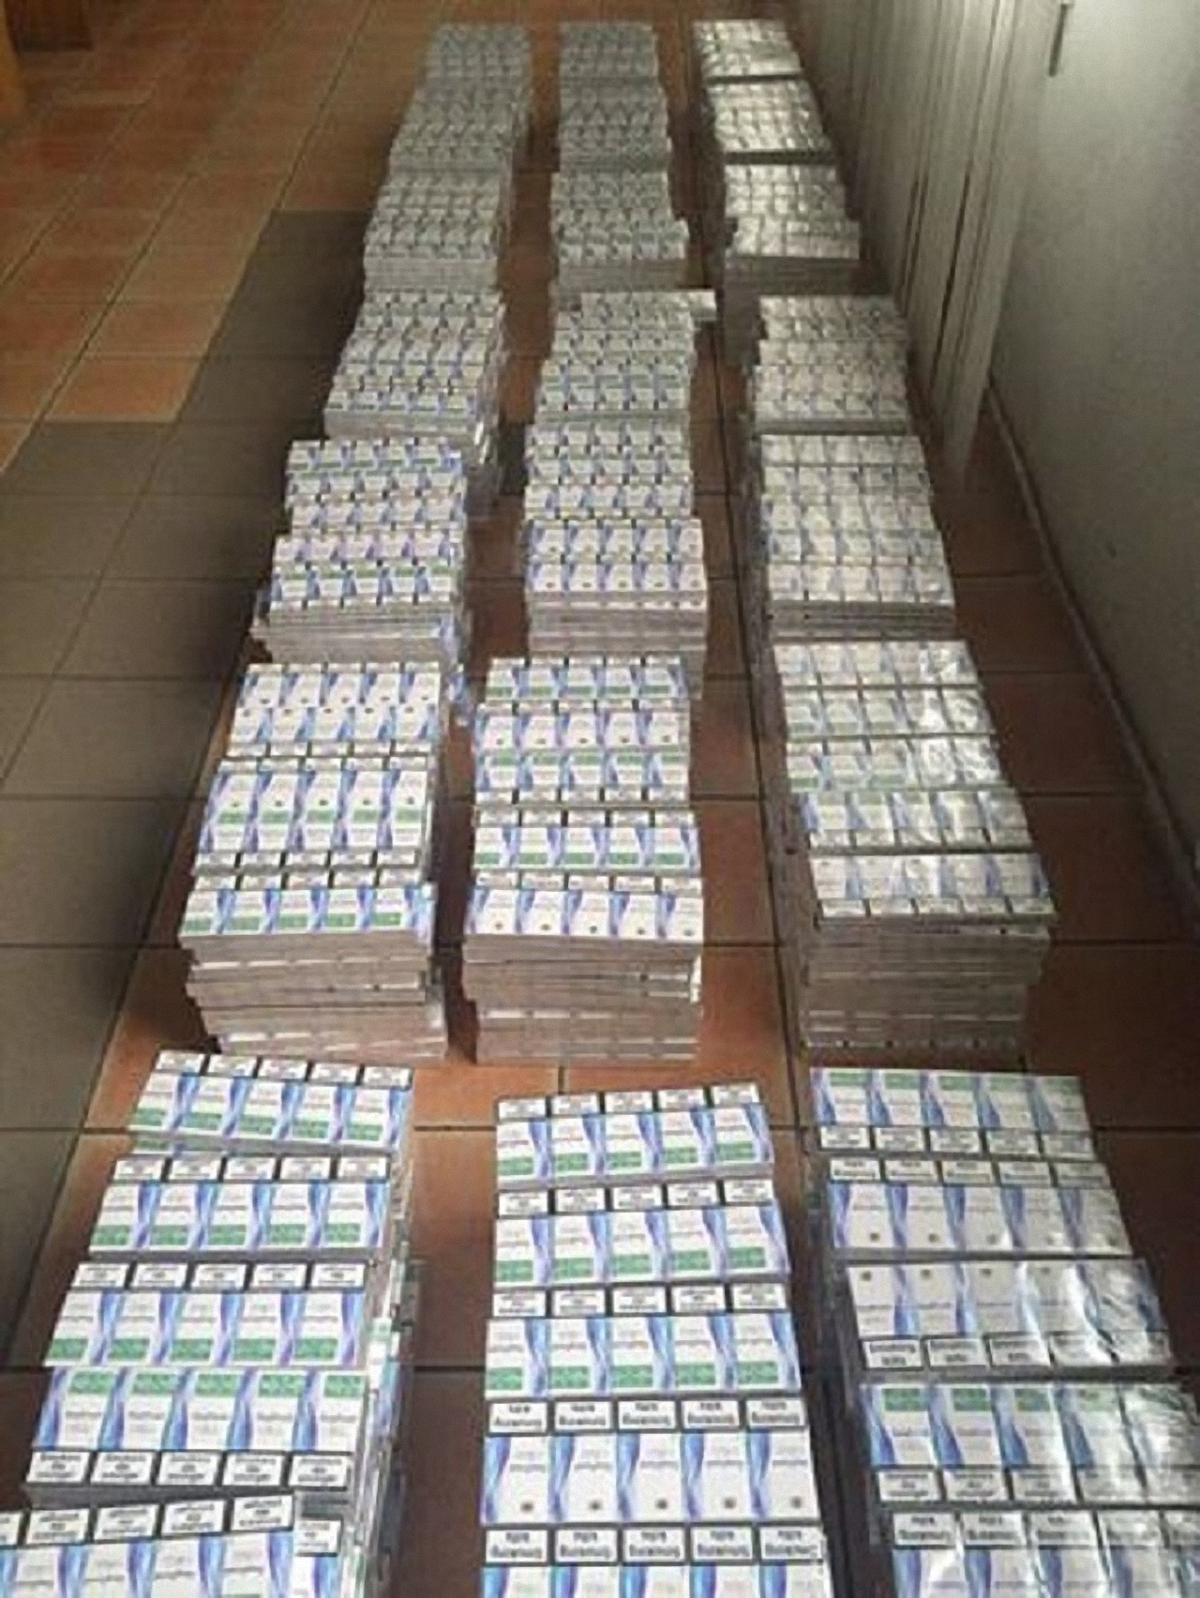 Спецслужбы конфисковали 10,5 тыс пачек сигарет - фото 1